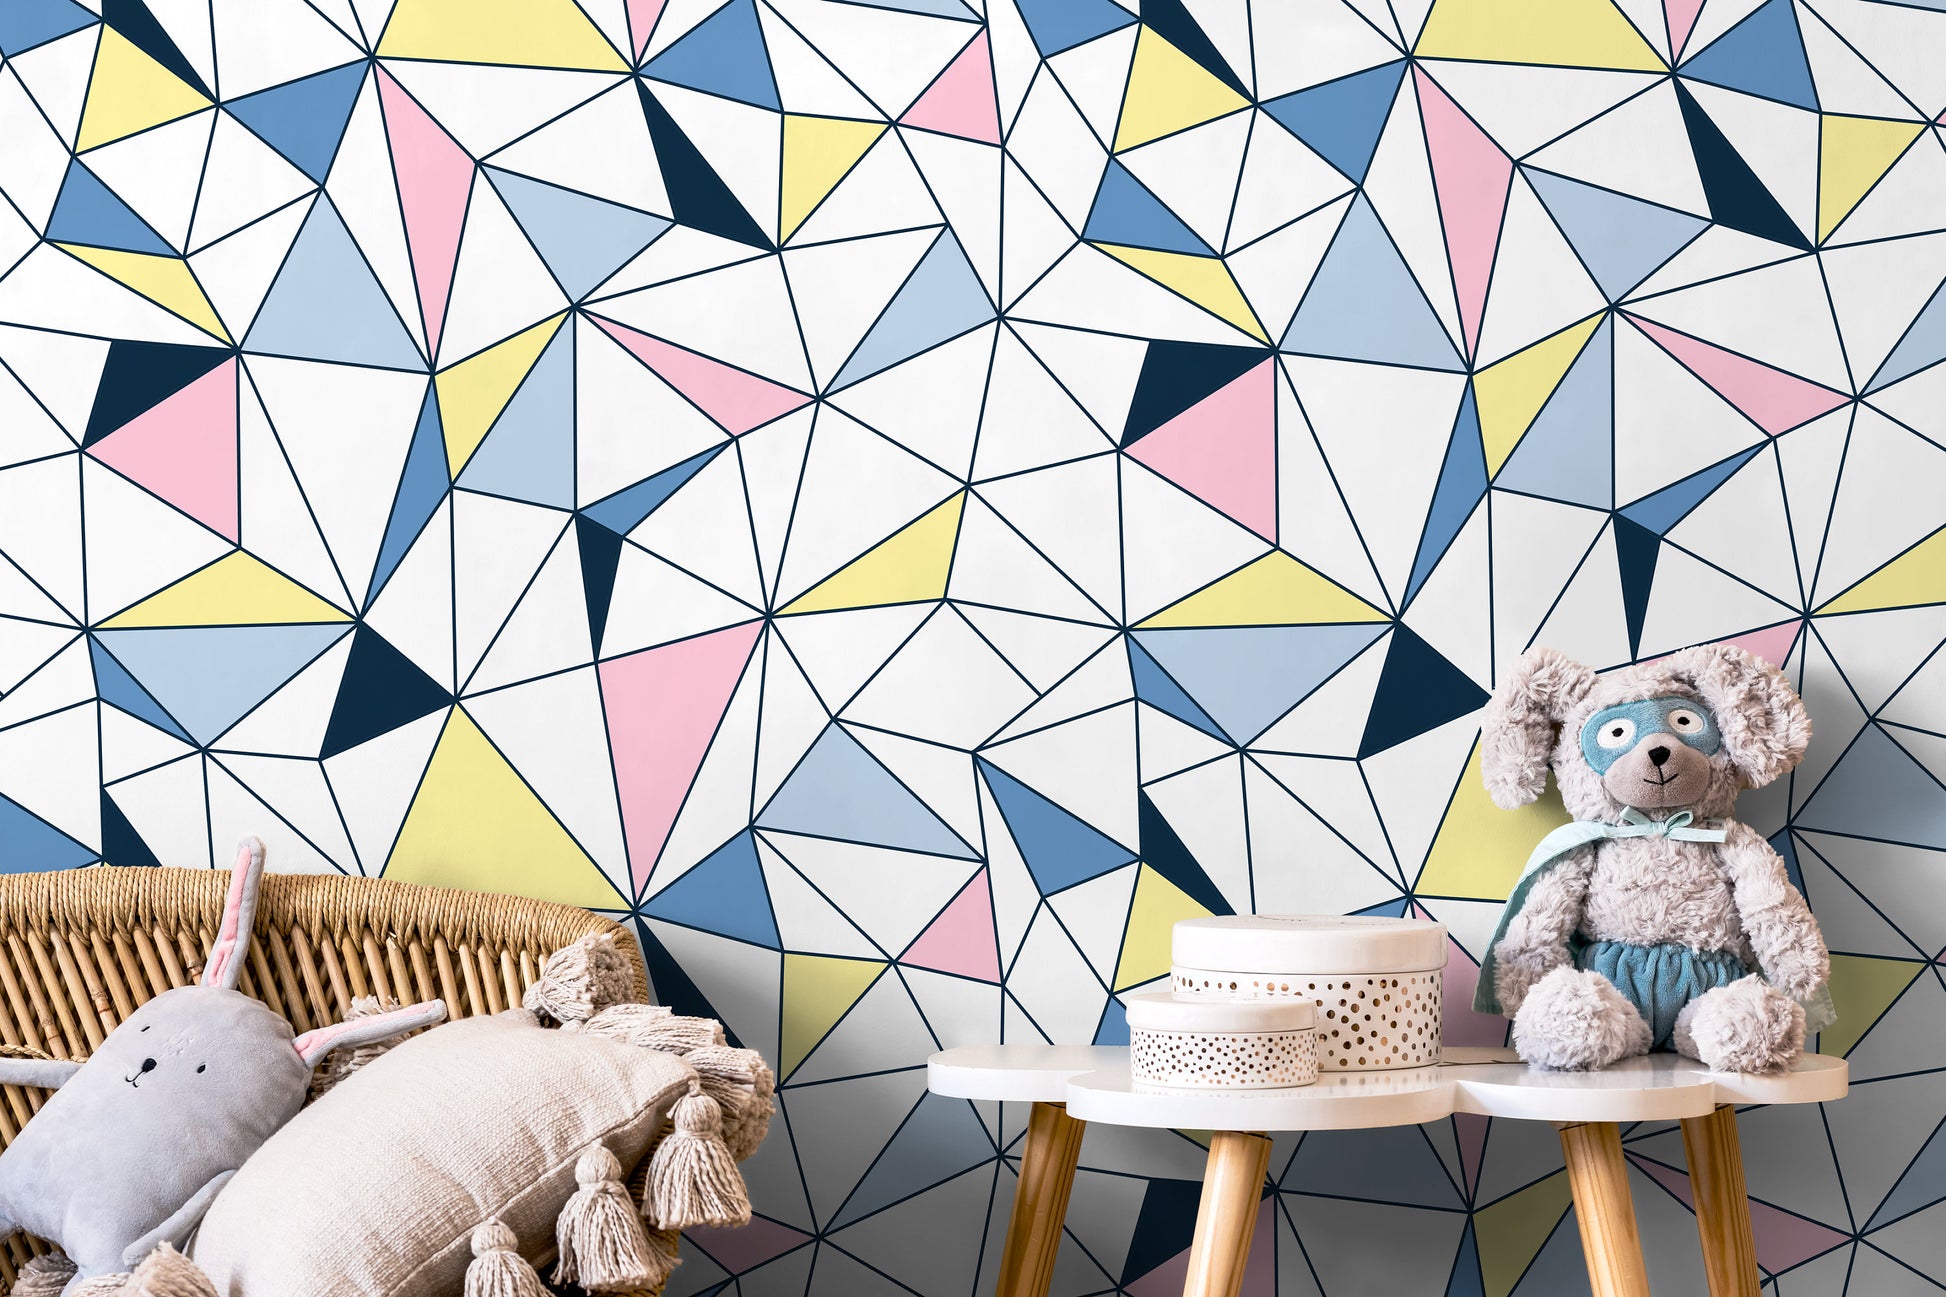 Retro Geometric Wallpaper Removable Wallpaper Home Decor Wall Art Room Decor / Colorful Triangle Wallpaper - B731